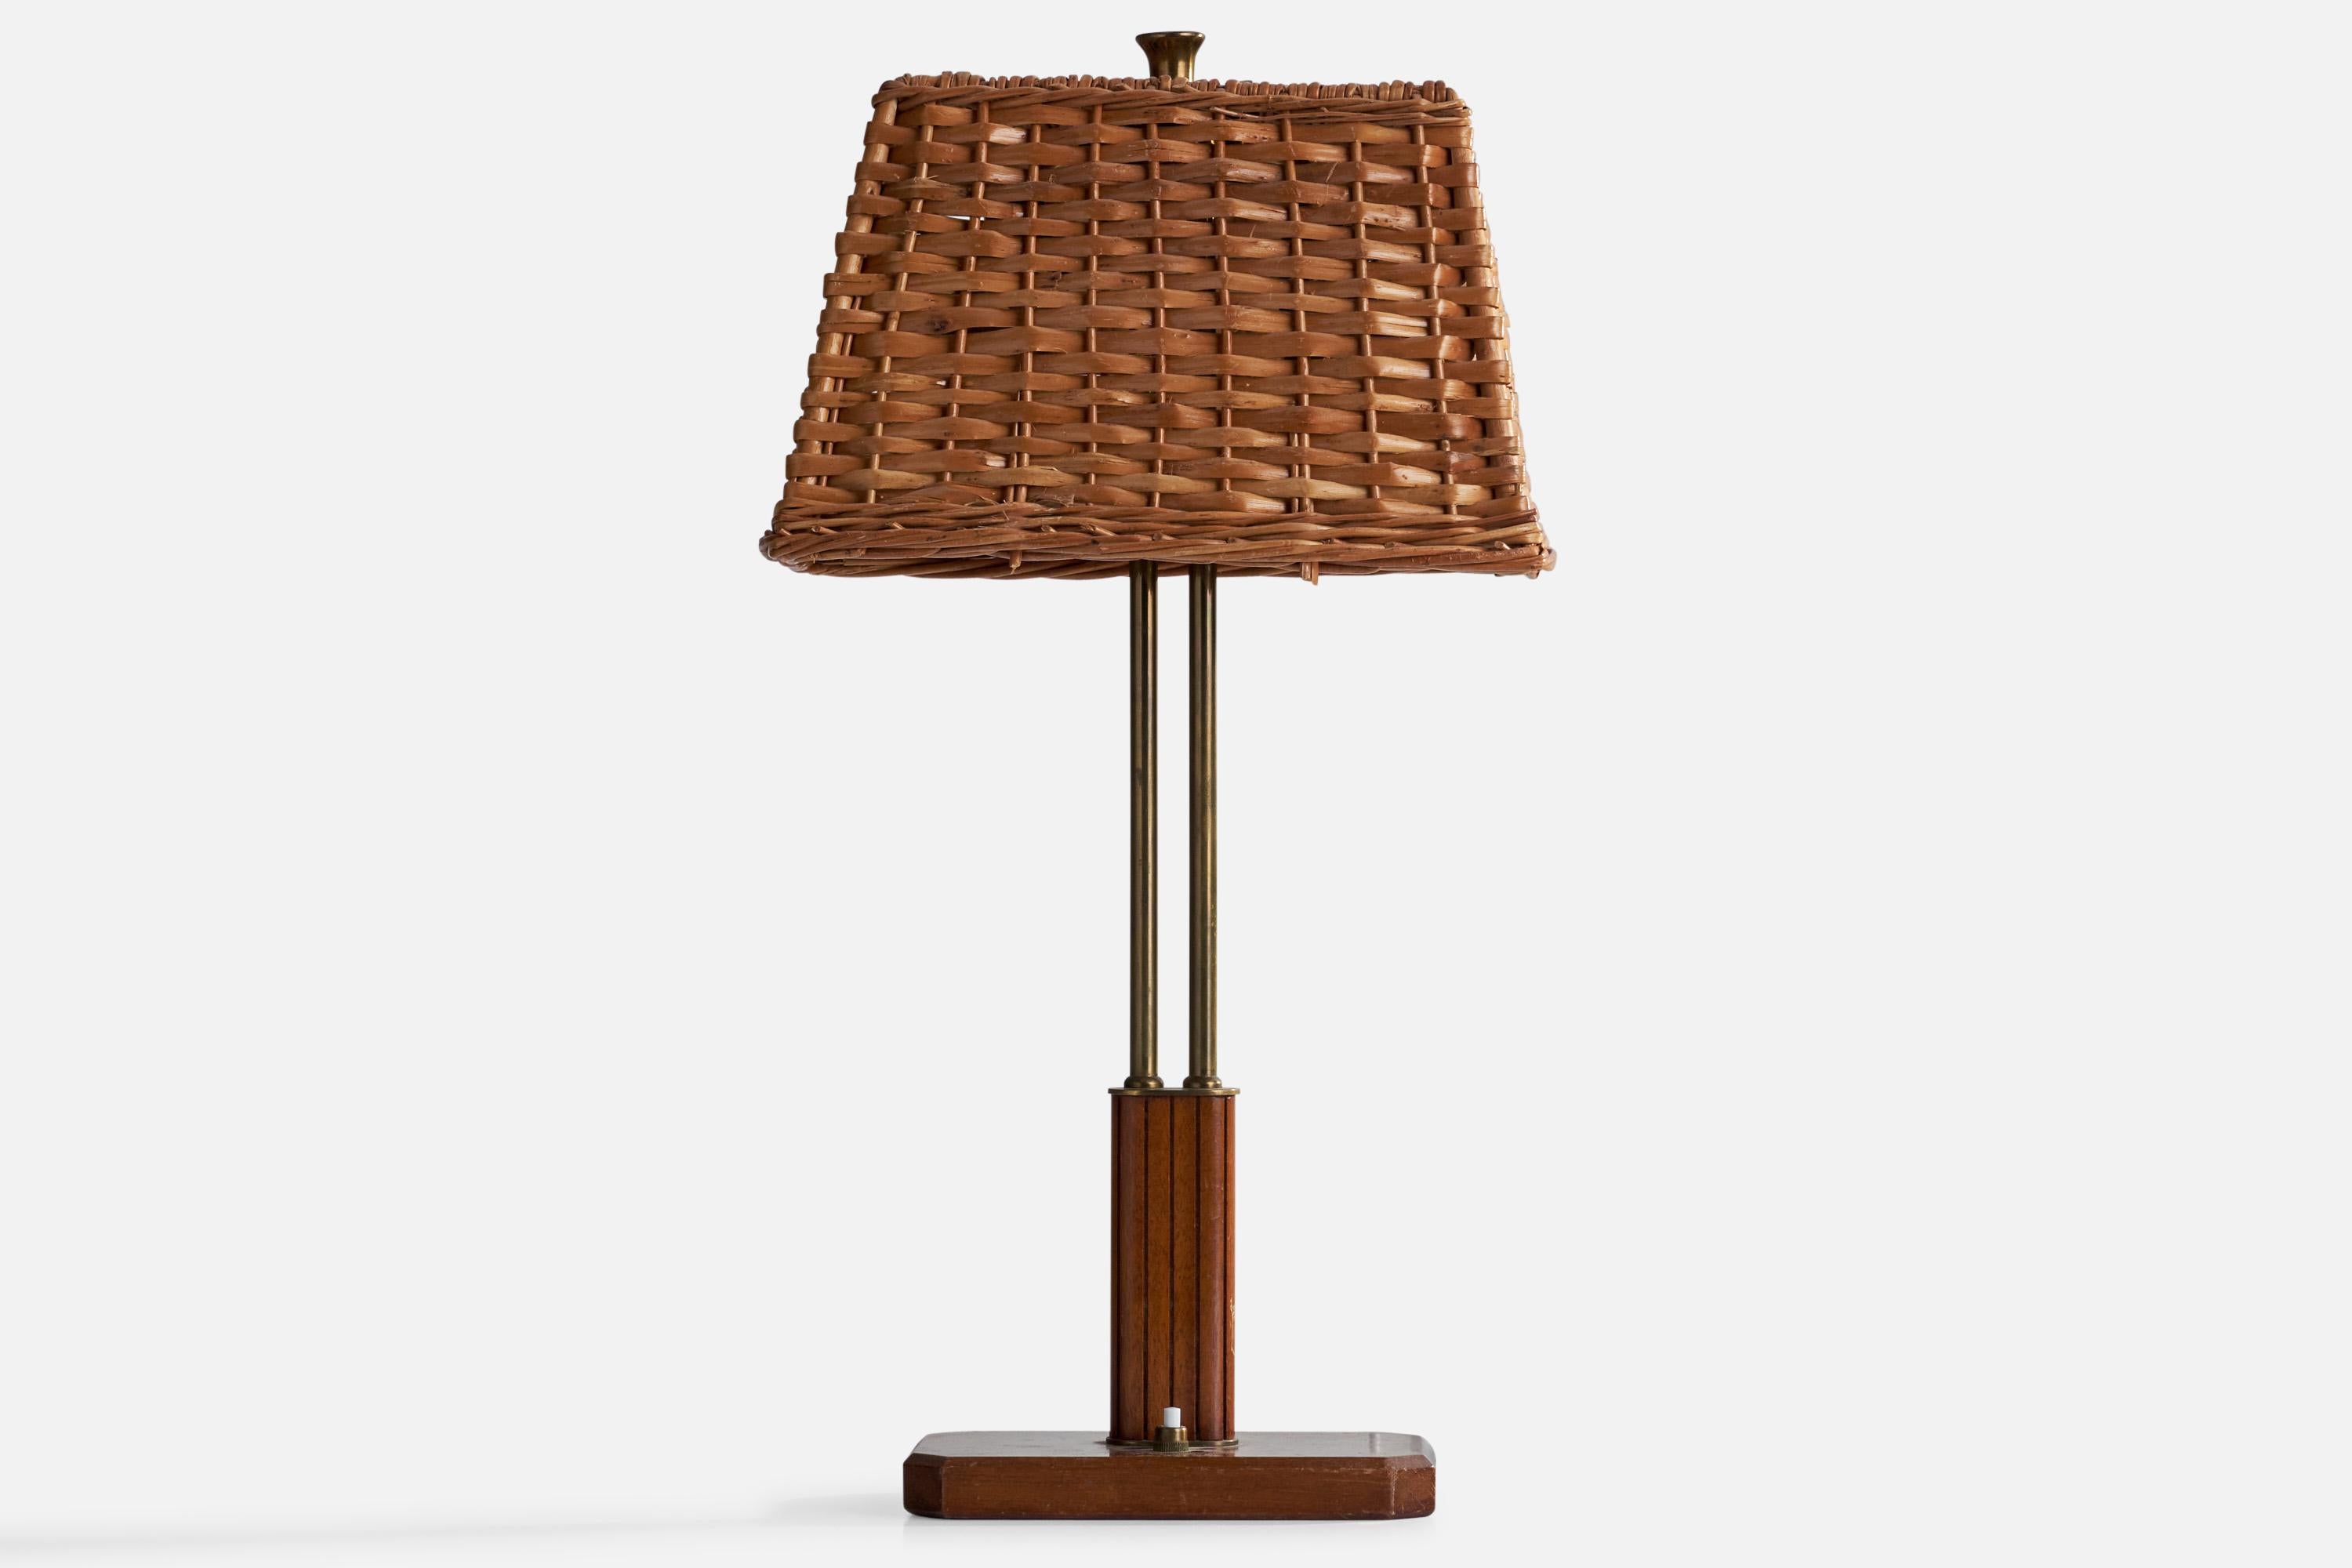 Eine seltene Tischlampe aus Messing, Mahagoni und Rattan, entworfen von Harald Notini und hergestellt von Böhlmarks, Schweden, 1940er Jahre.

Gesamtabmessungen (Zoll): 19